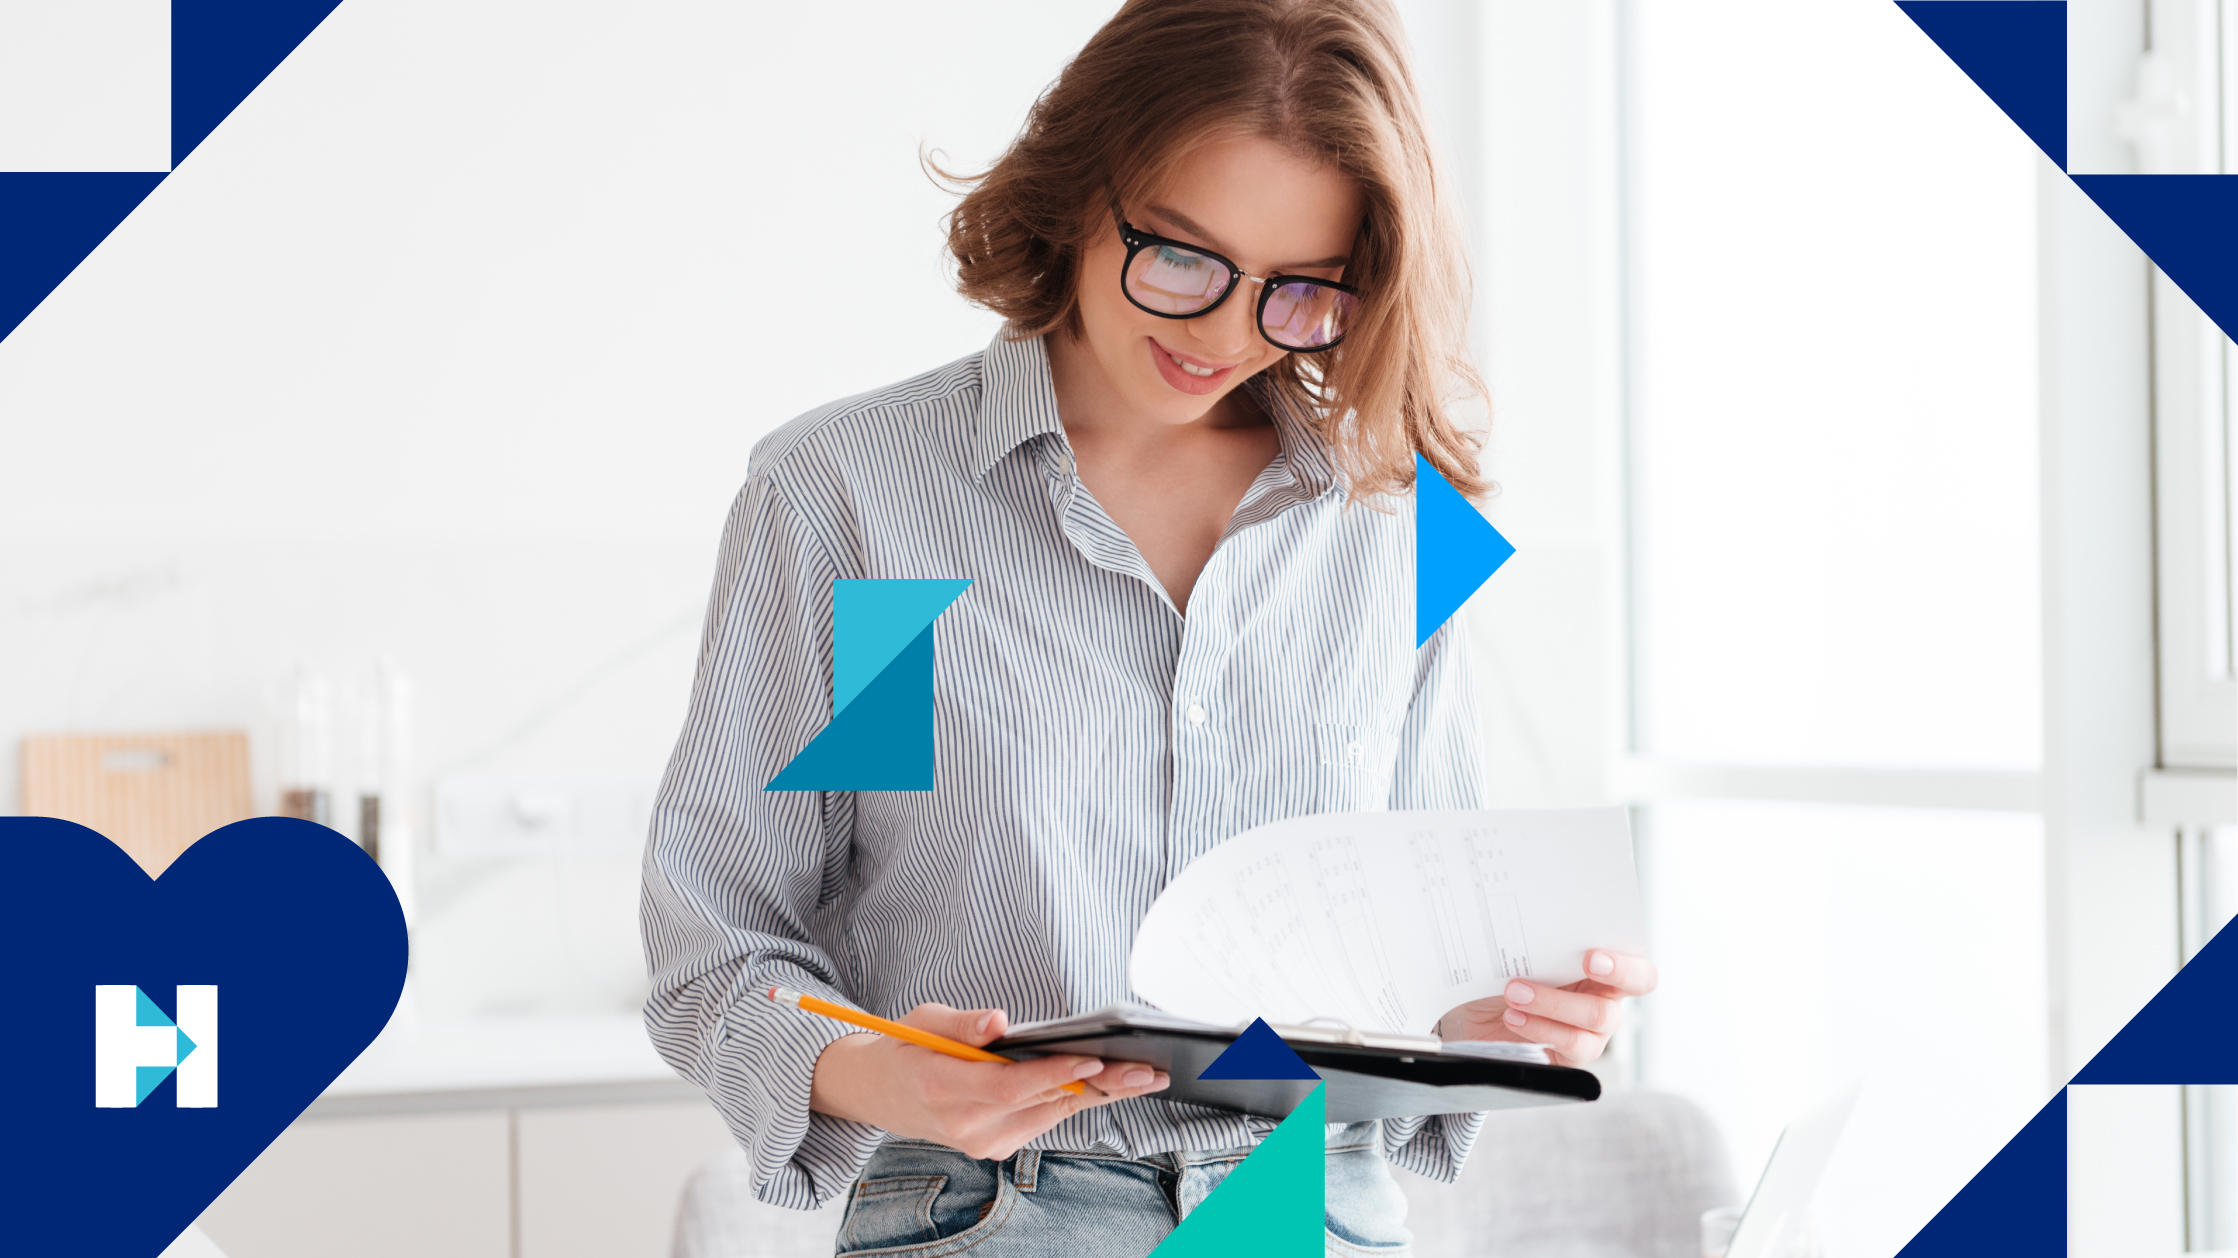 Une femme portant des lunettes et une chemise à rayures bleues vérifie ses notes sur un bloc-notes, tenant un crayon dans sa main droite,